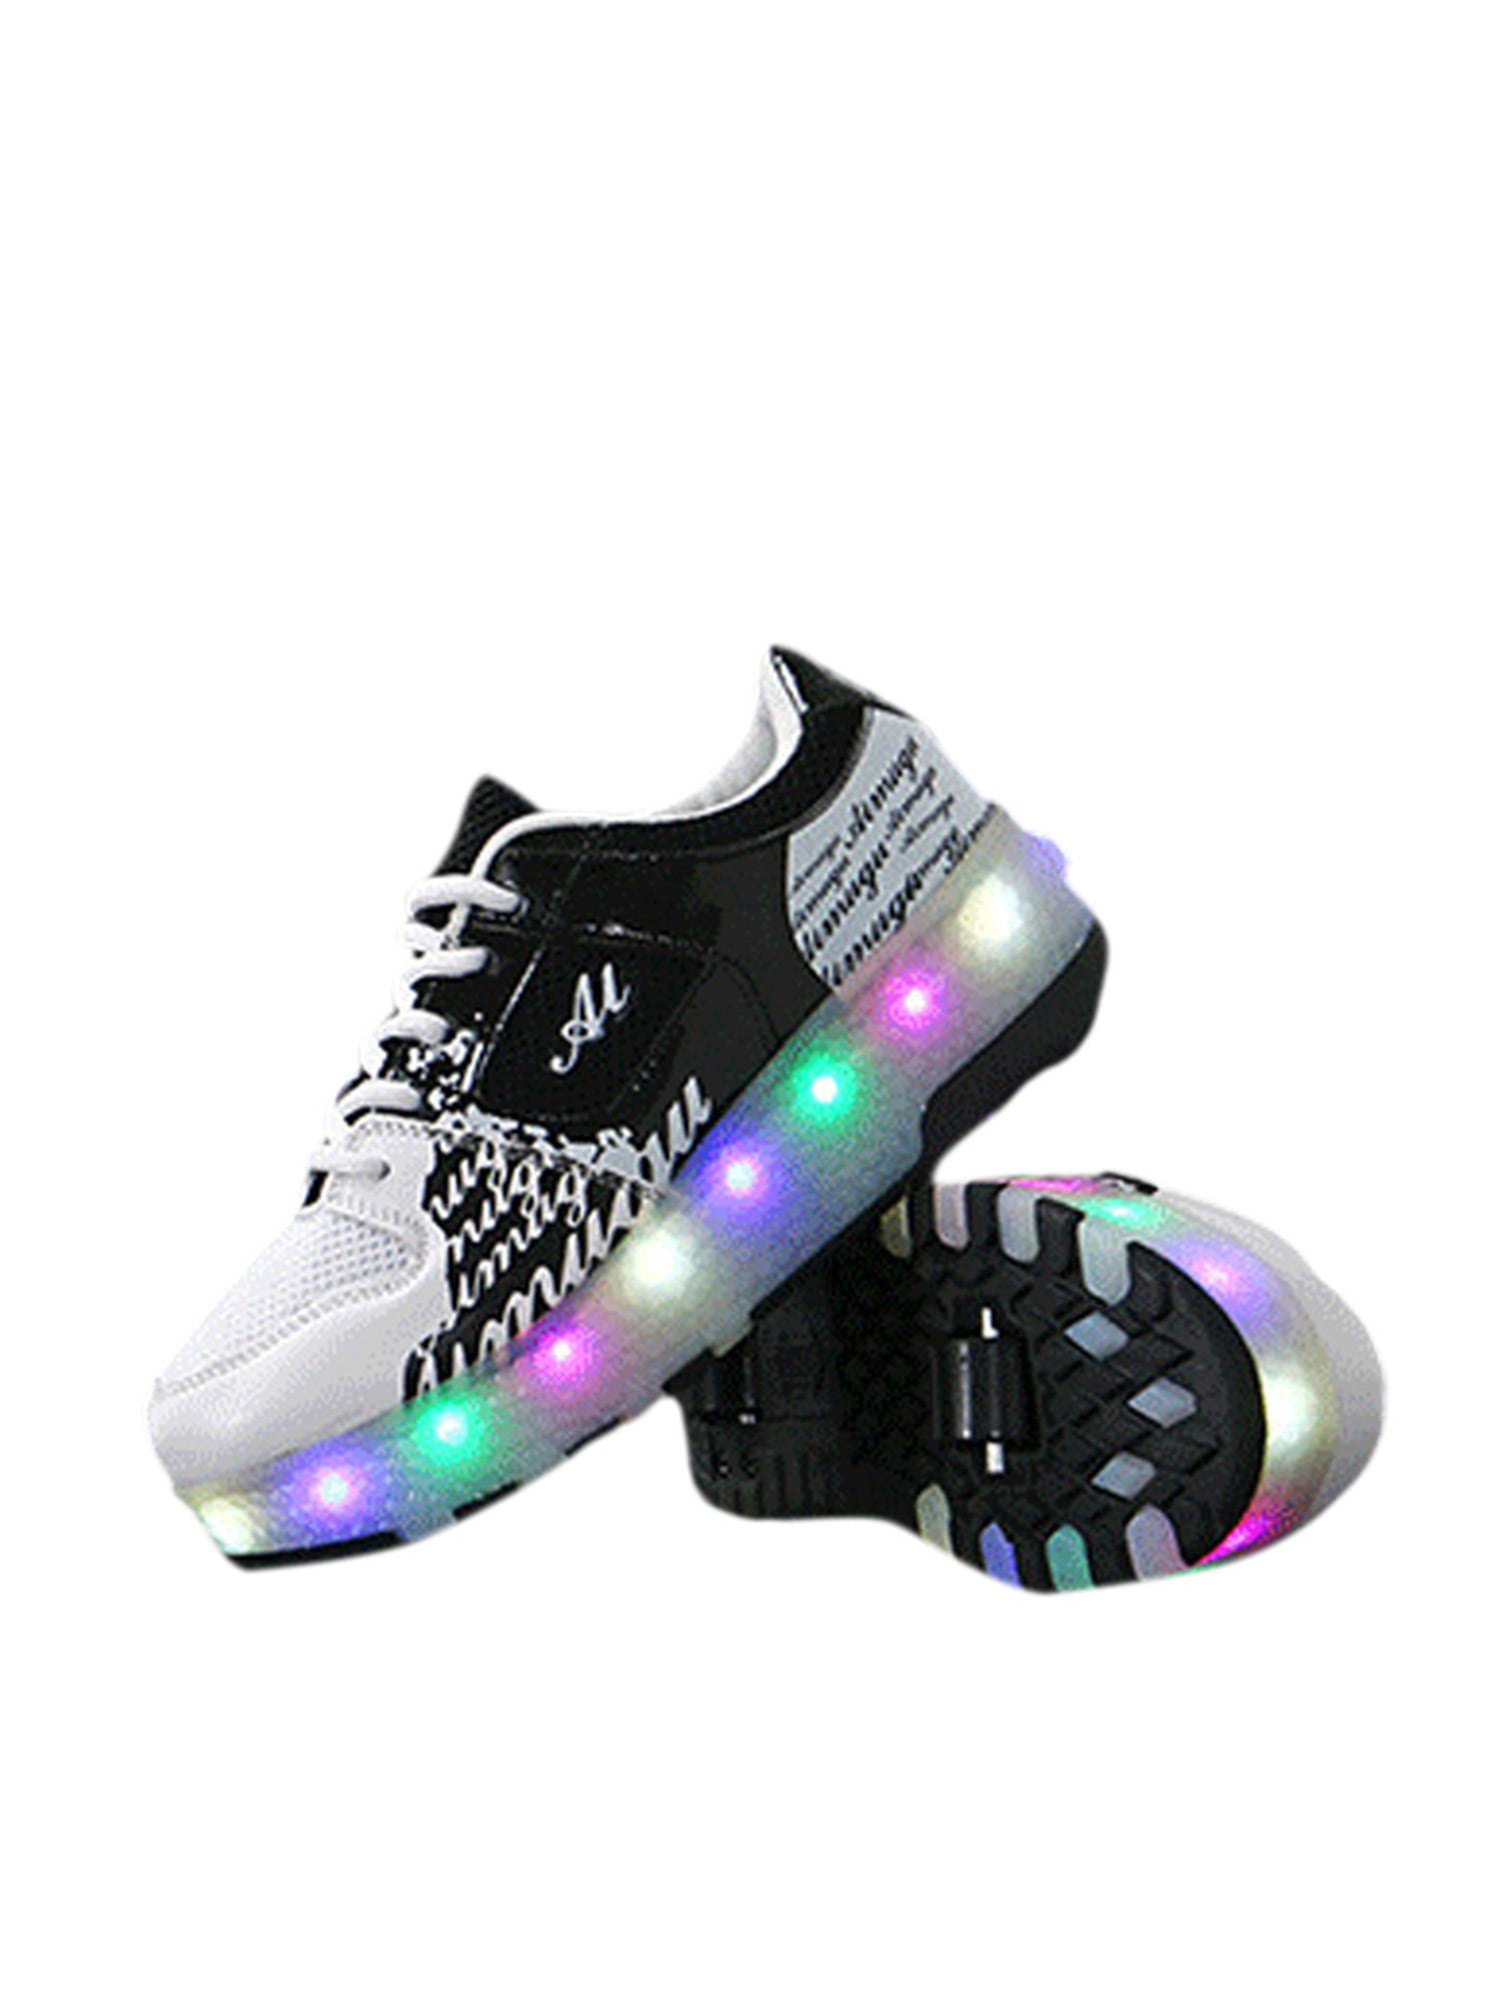 Light Up Shoes Roller Skates Heel Wheels Sneakers Shoes Roller Skates for Kids 